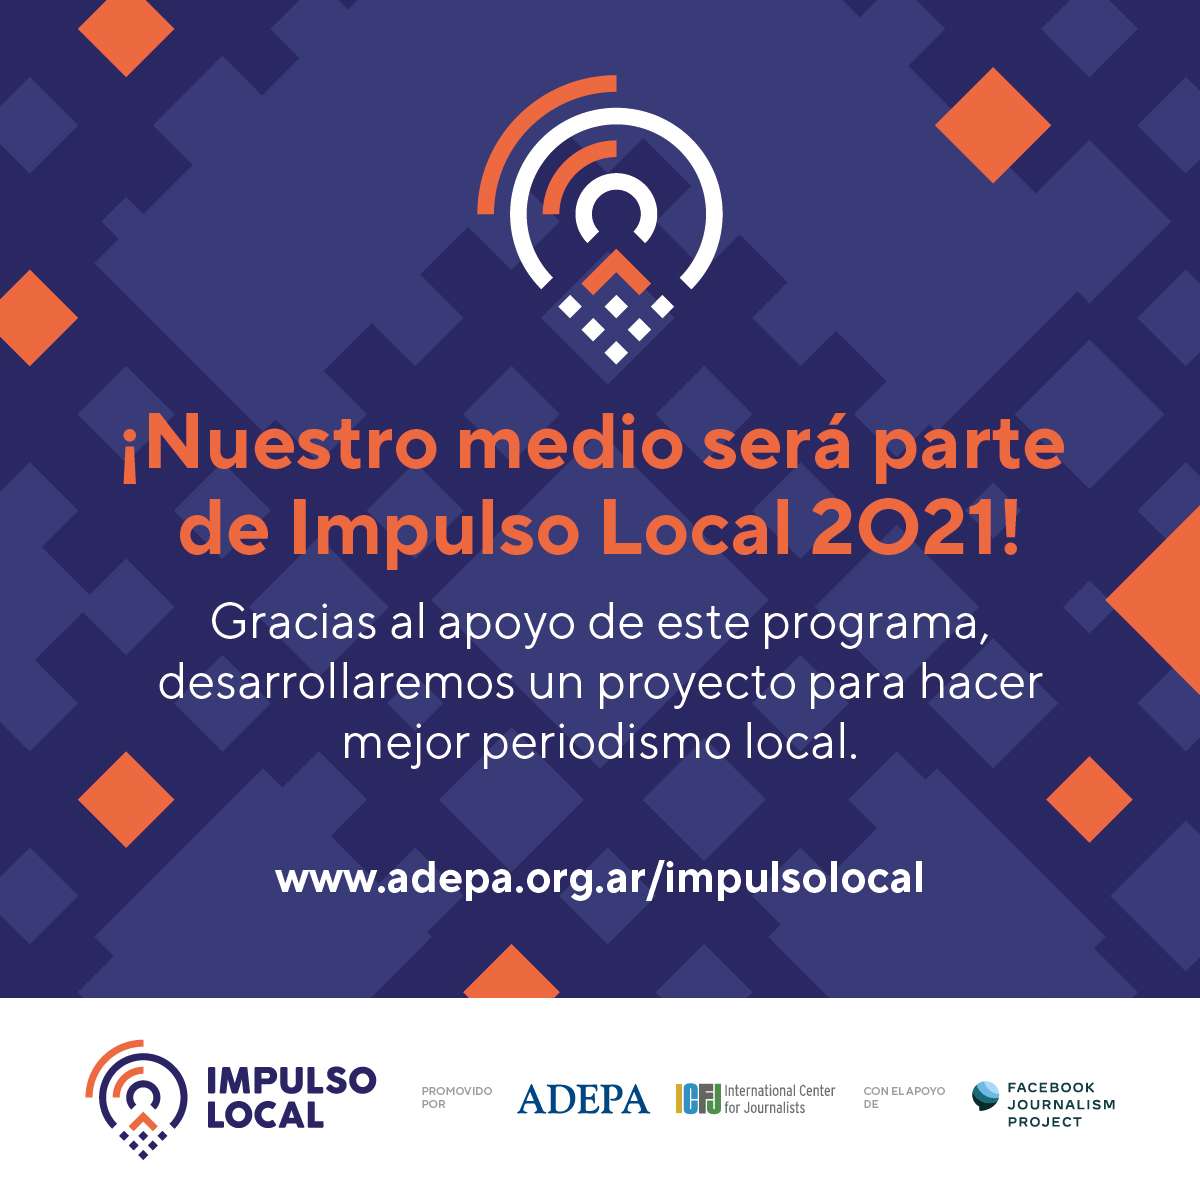 Paralelo 32 participará en Impulso Local 2021, el programa de apoyo al periodismo en Argentina de Adepa, ICFJ y el Facebook Journalism Project